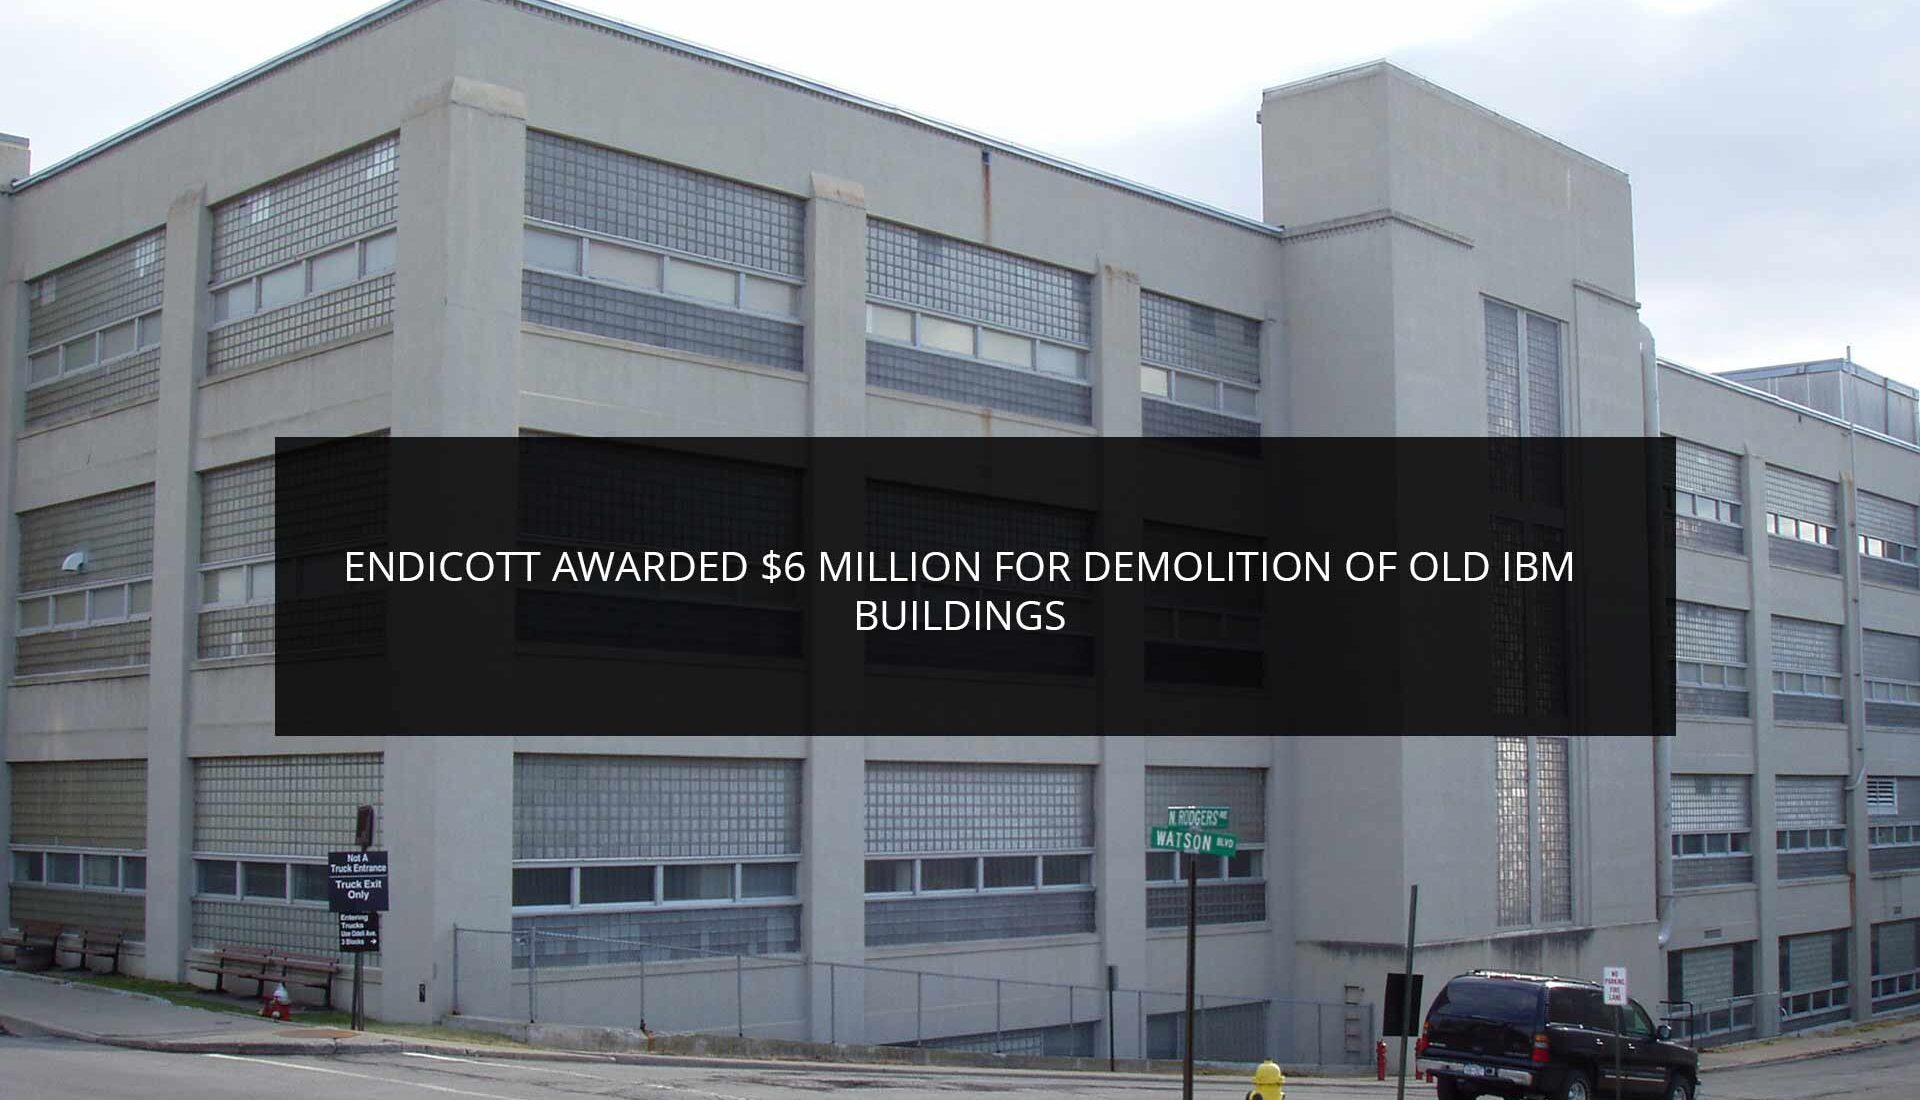 Endicott Awarded $6 Million for Demolition of Old IBM Buildings